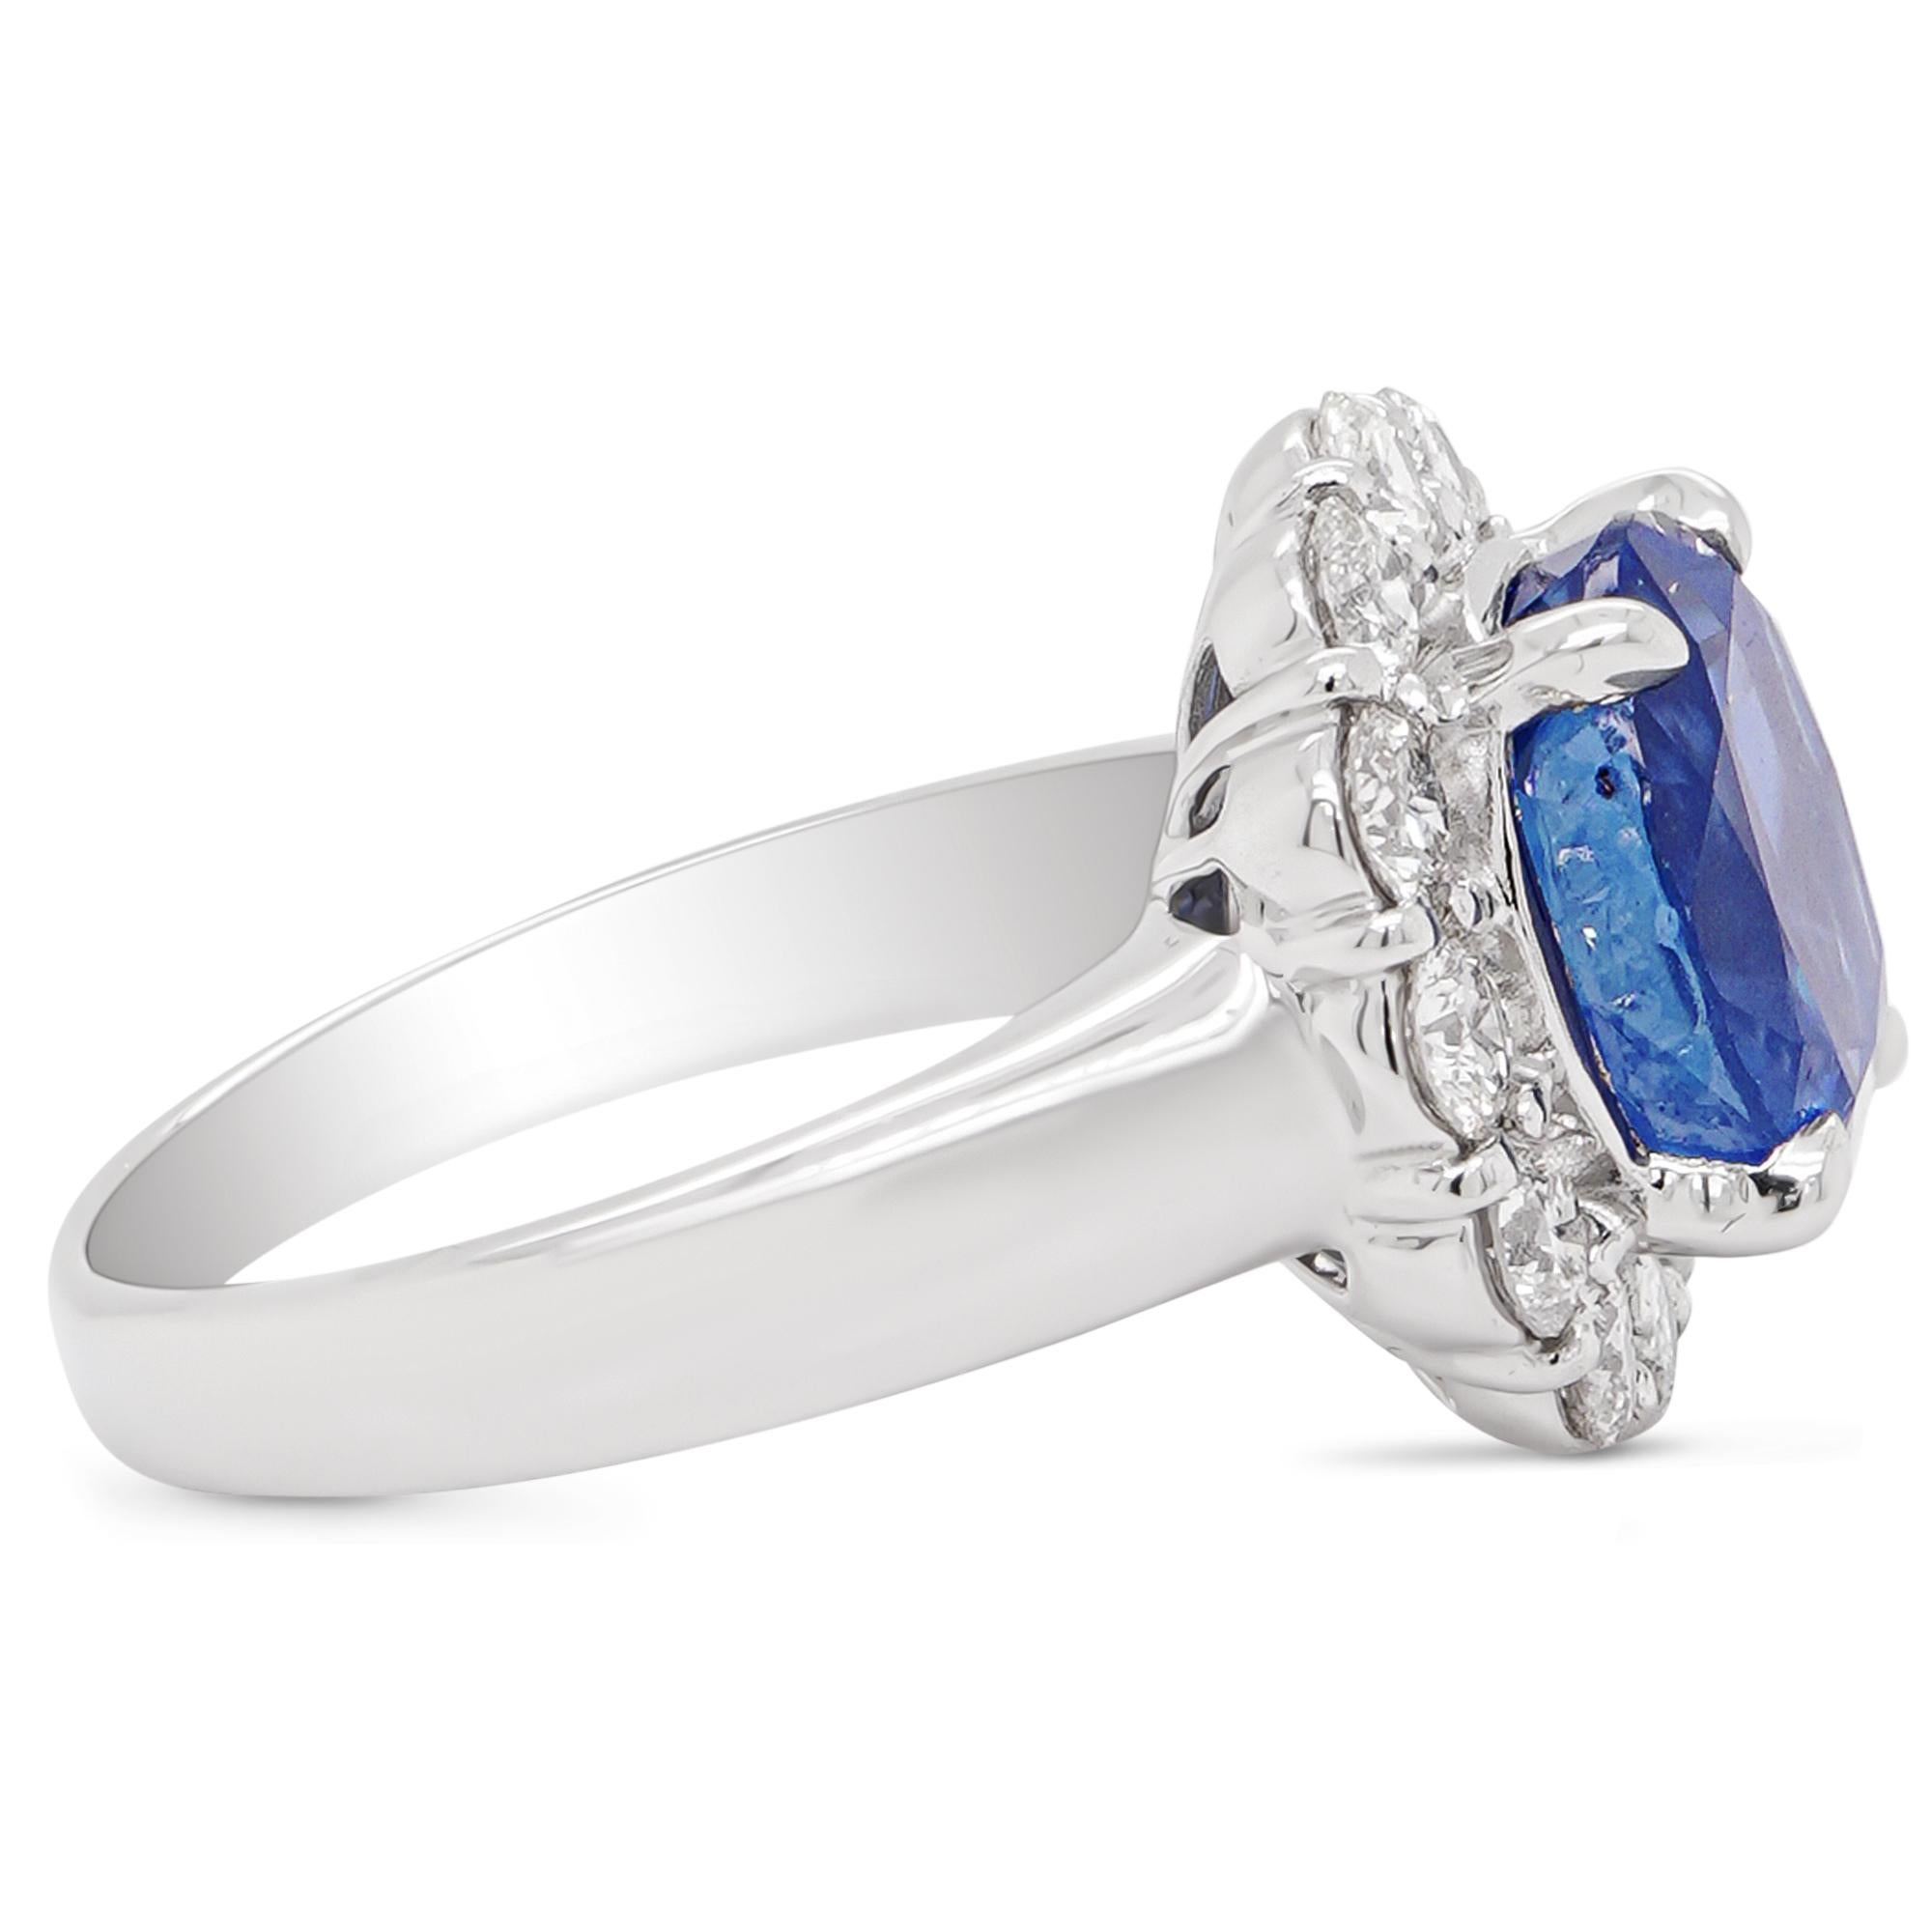 Un magnifique saphir bleu de 5 carats certifié par la GIA (Brilliante No heat) est serti de 1,05 carats de diamants ronds blancs de taille brillant.
Les saphirs de Birmanie comptent parmi les pierres précieuses colorées les plus convoitées au monde.